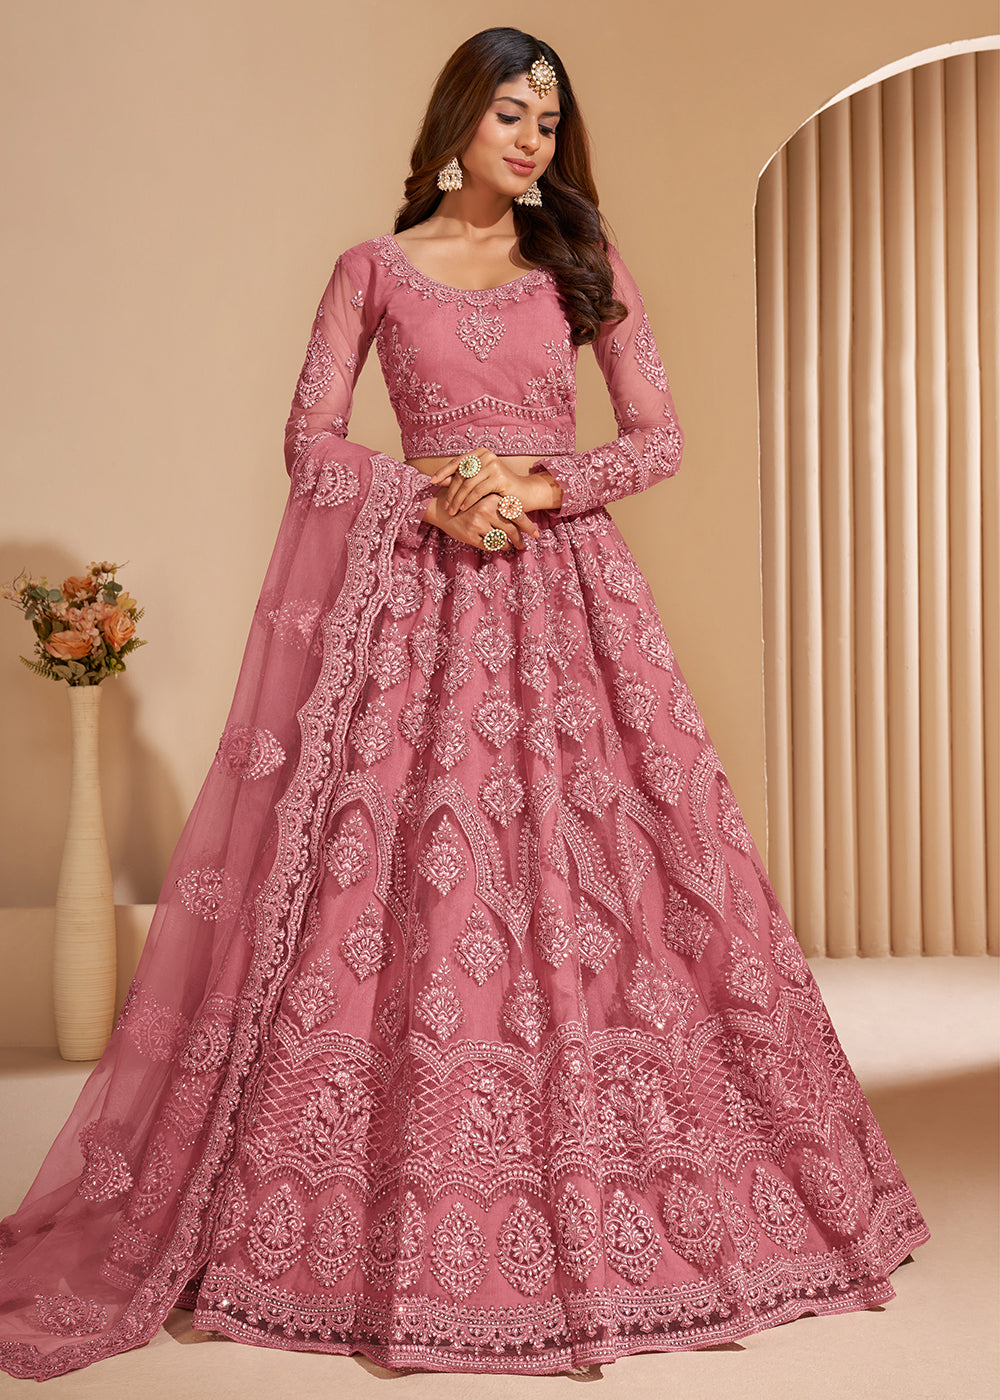 Buy Lovely Pink Designer Bridesmaids Lehenga - Wedding Lehenga Choli